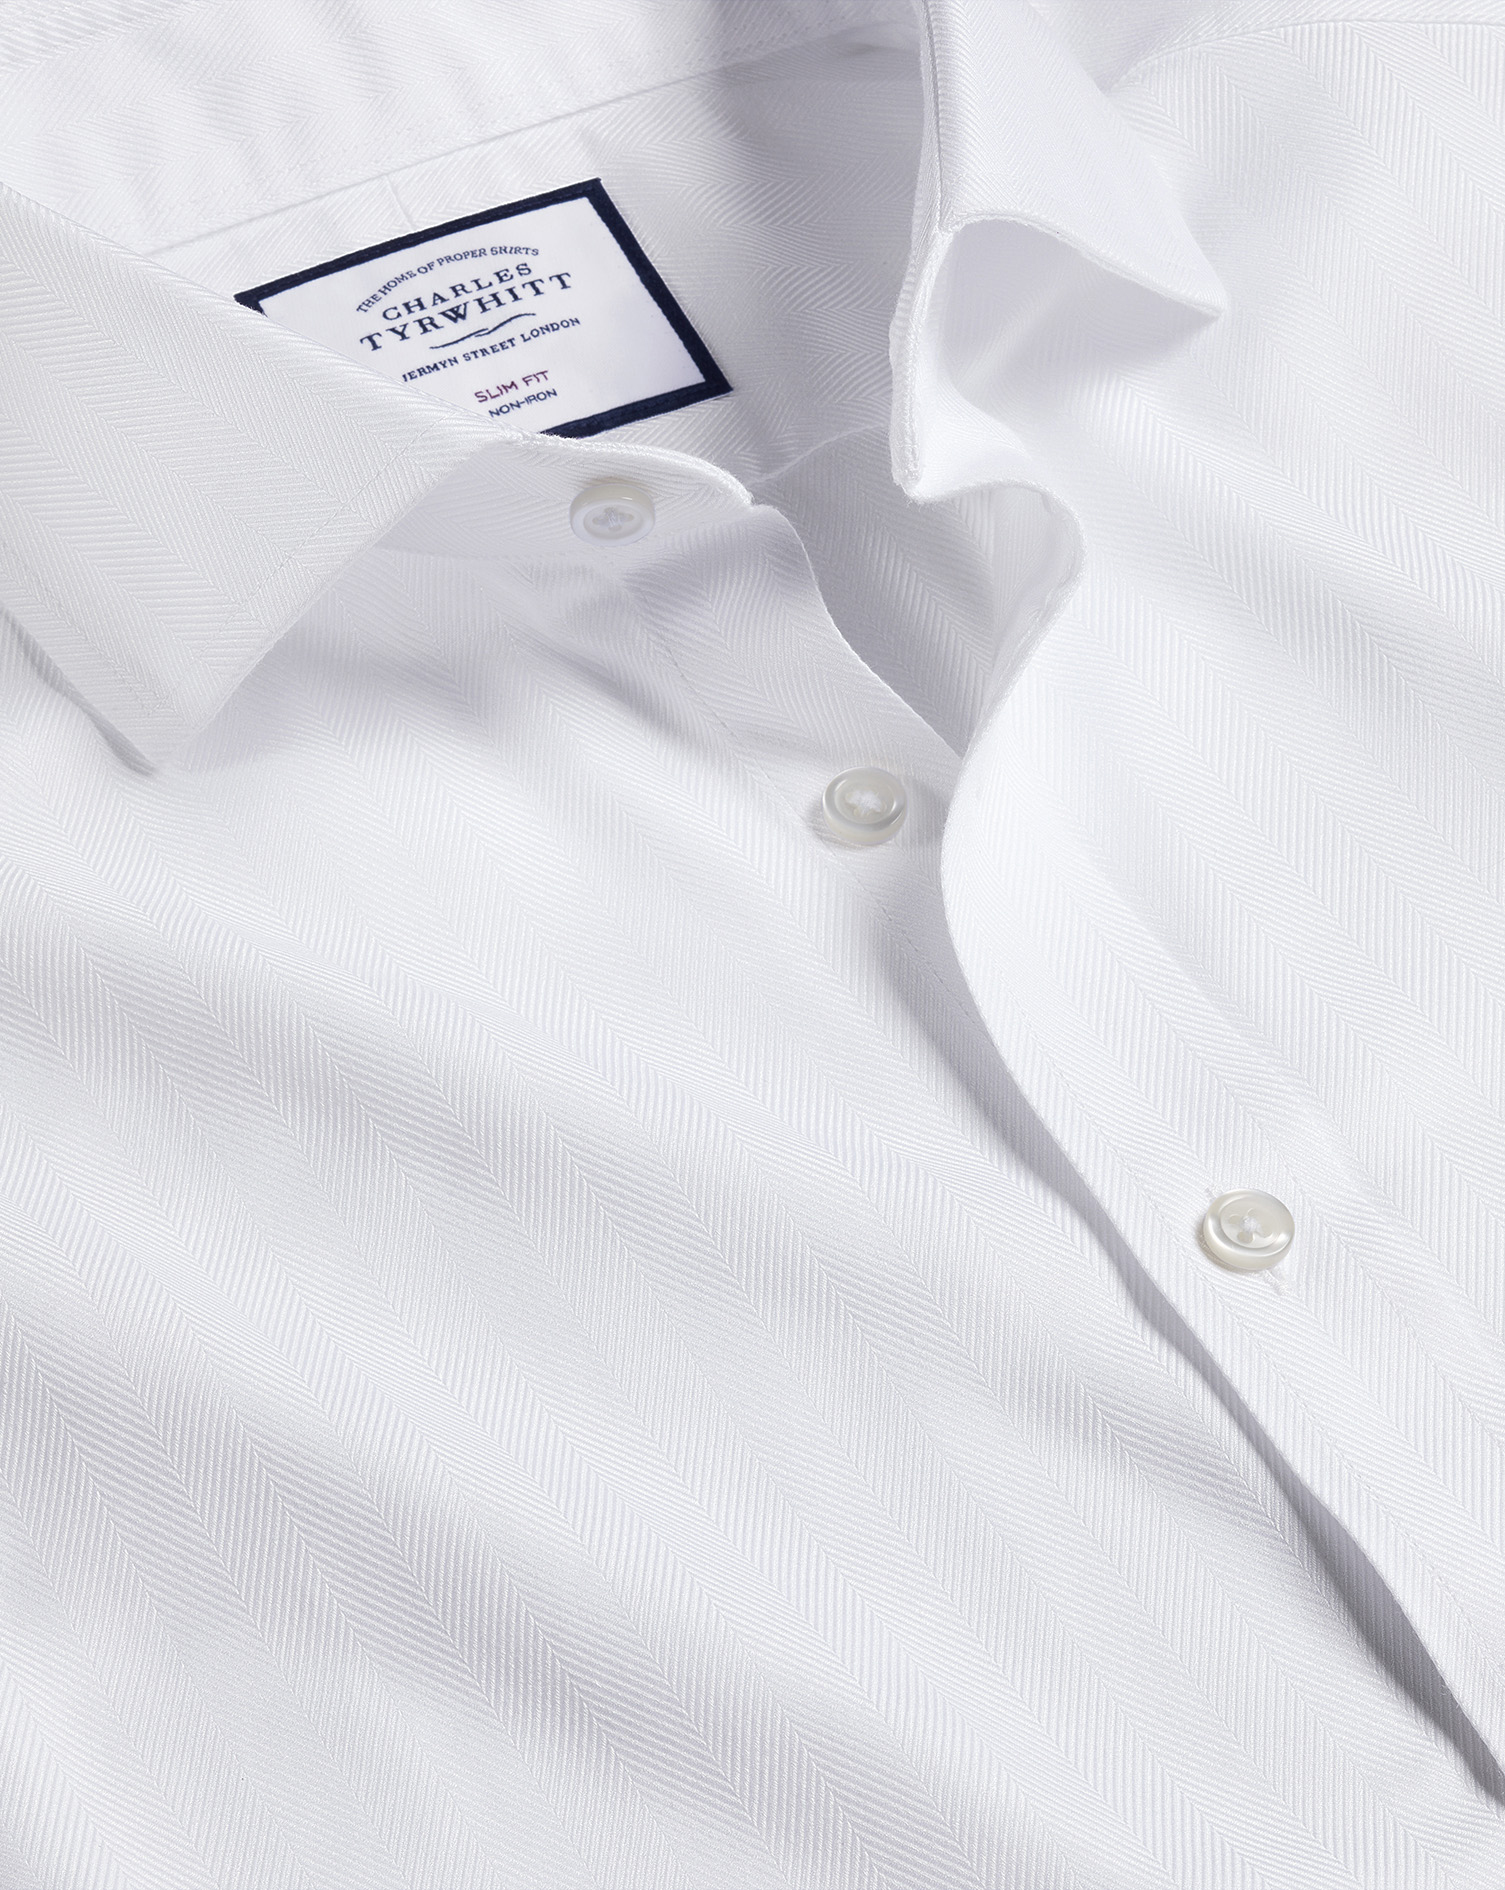 Men's Charles Tyrwhitt Cutaway Collar Non-Iron Herringbone Dress Shirt - White Single Cuff Size Larg